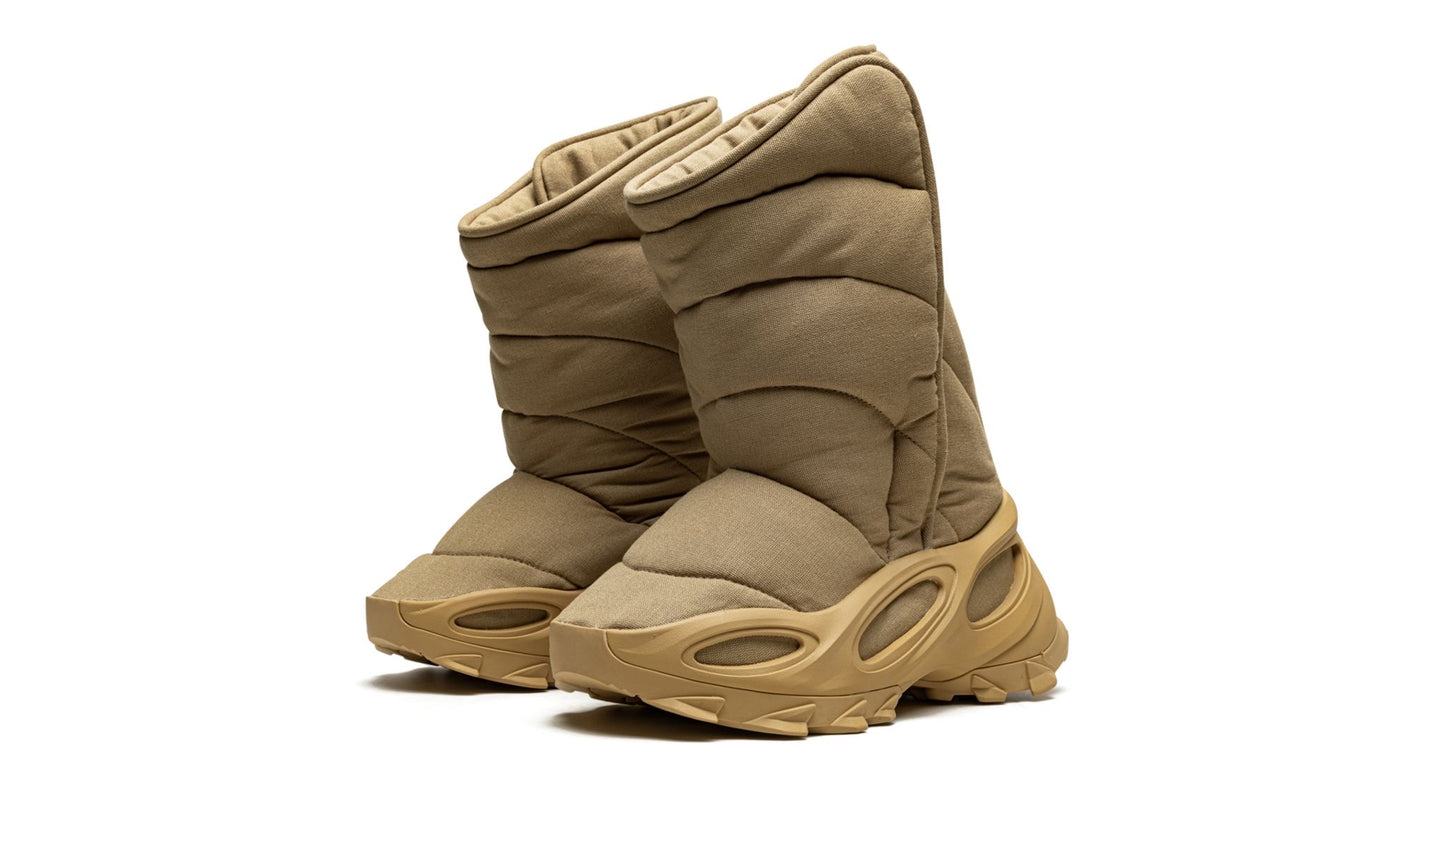 Adidas Yeezy NSLTD Boot “Khaki”